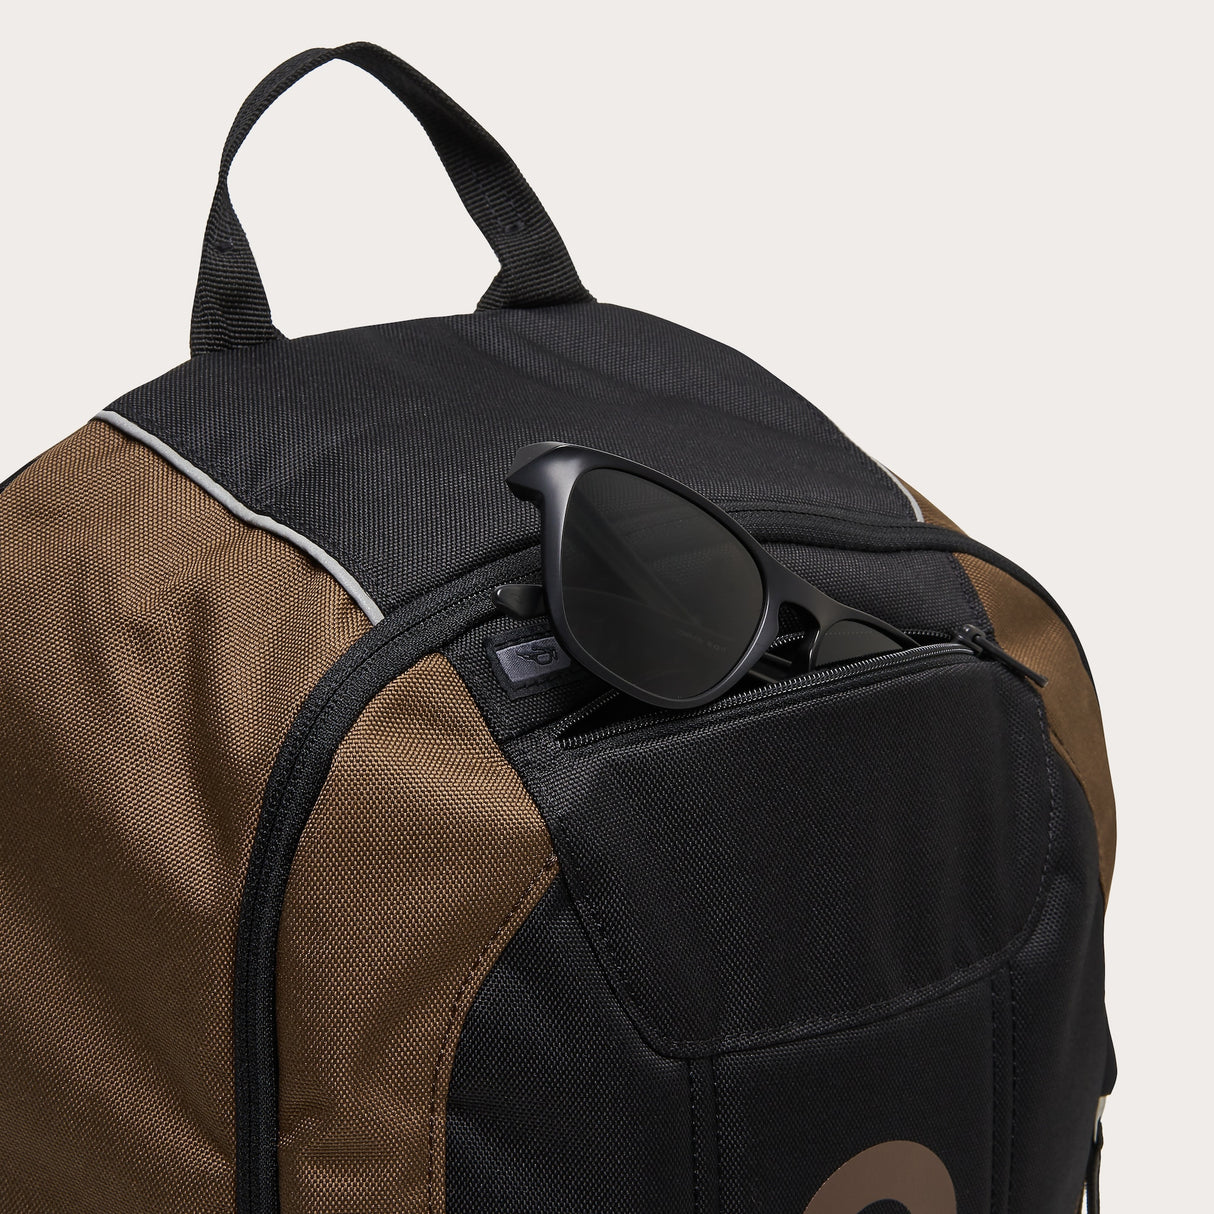 Oakley Enduro 20L 3.0 Backpack - Carafe